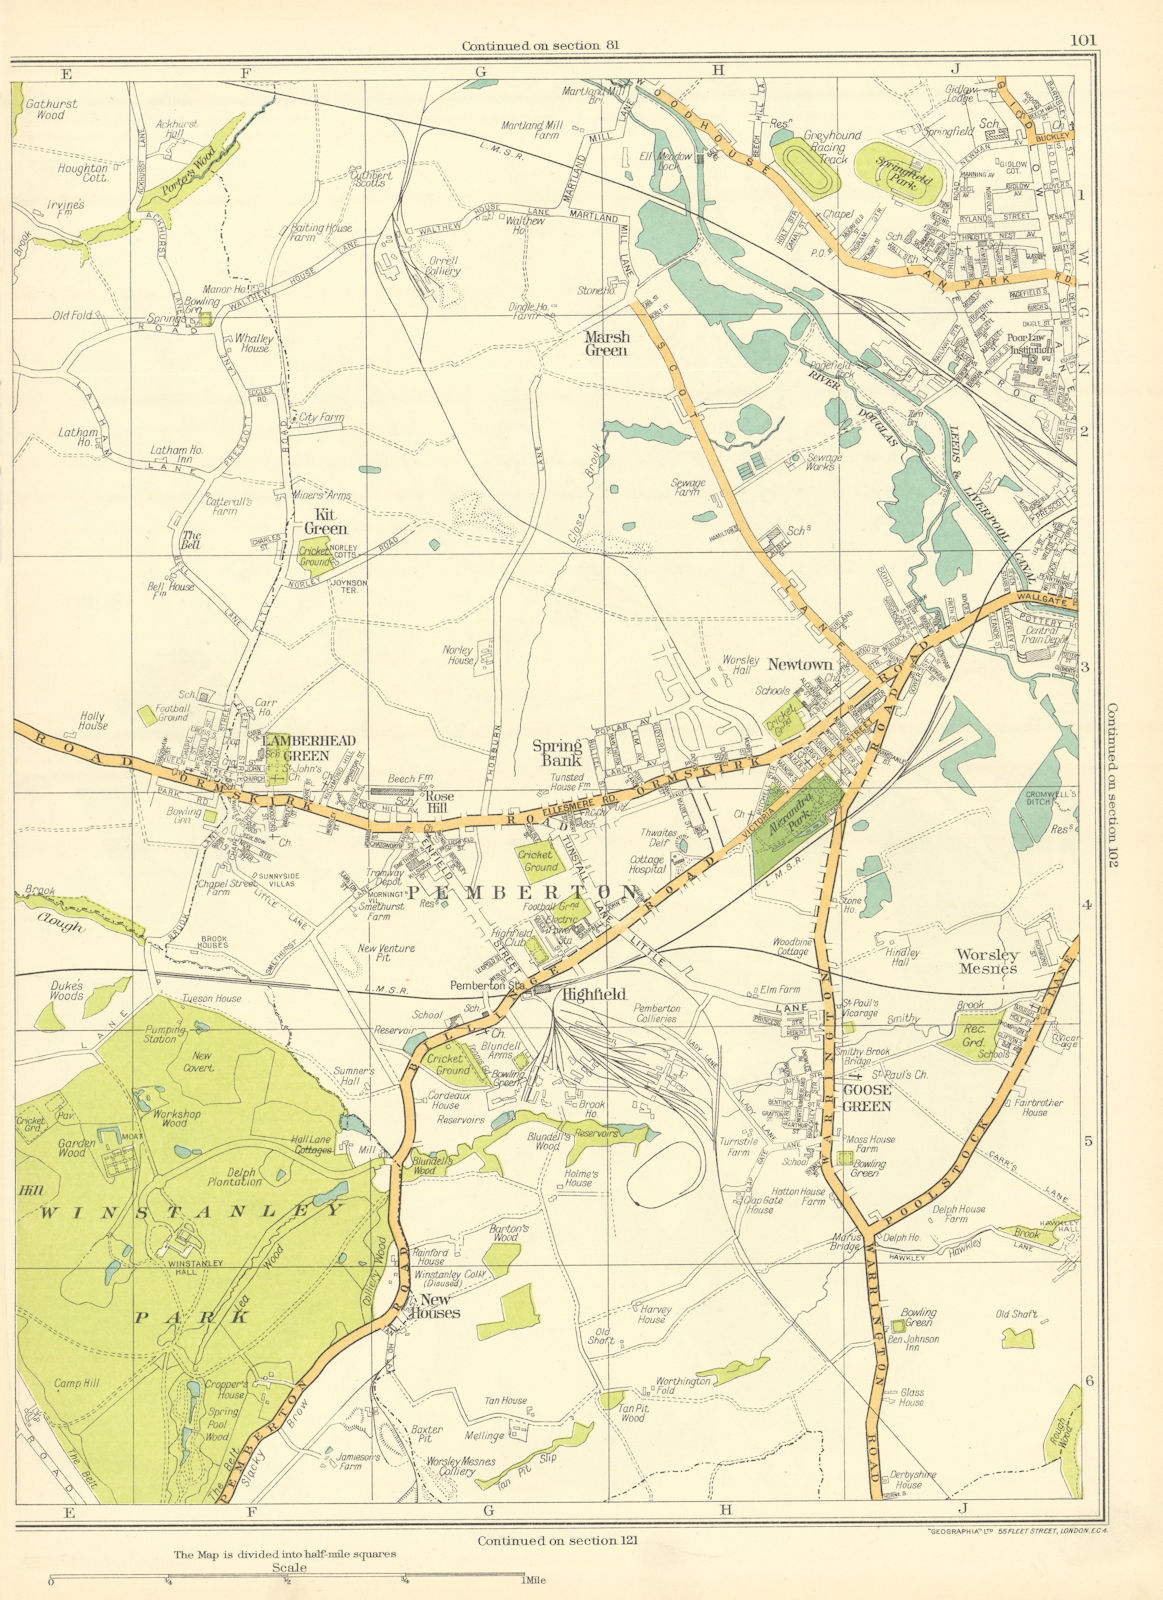 LANCS Wigan Pemberton Winstanley Newton Spring Bank Lamberhead Green 1935 map